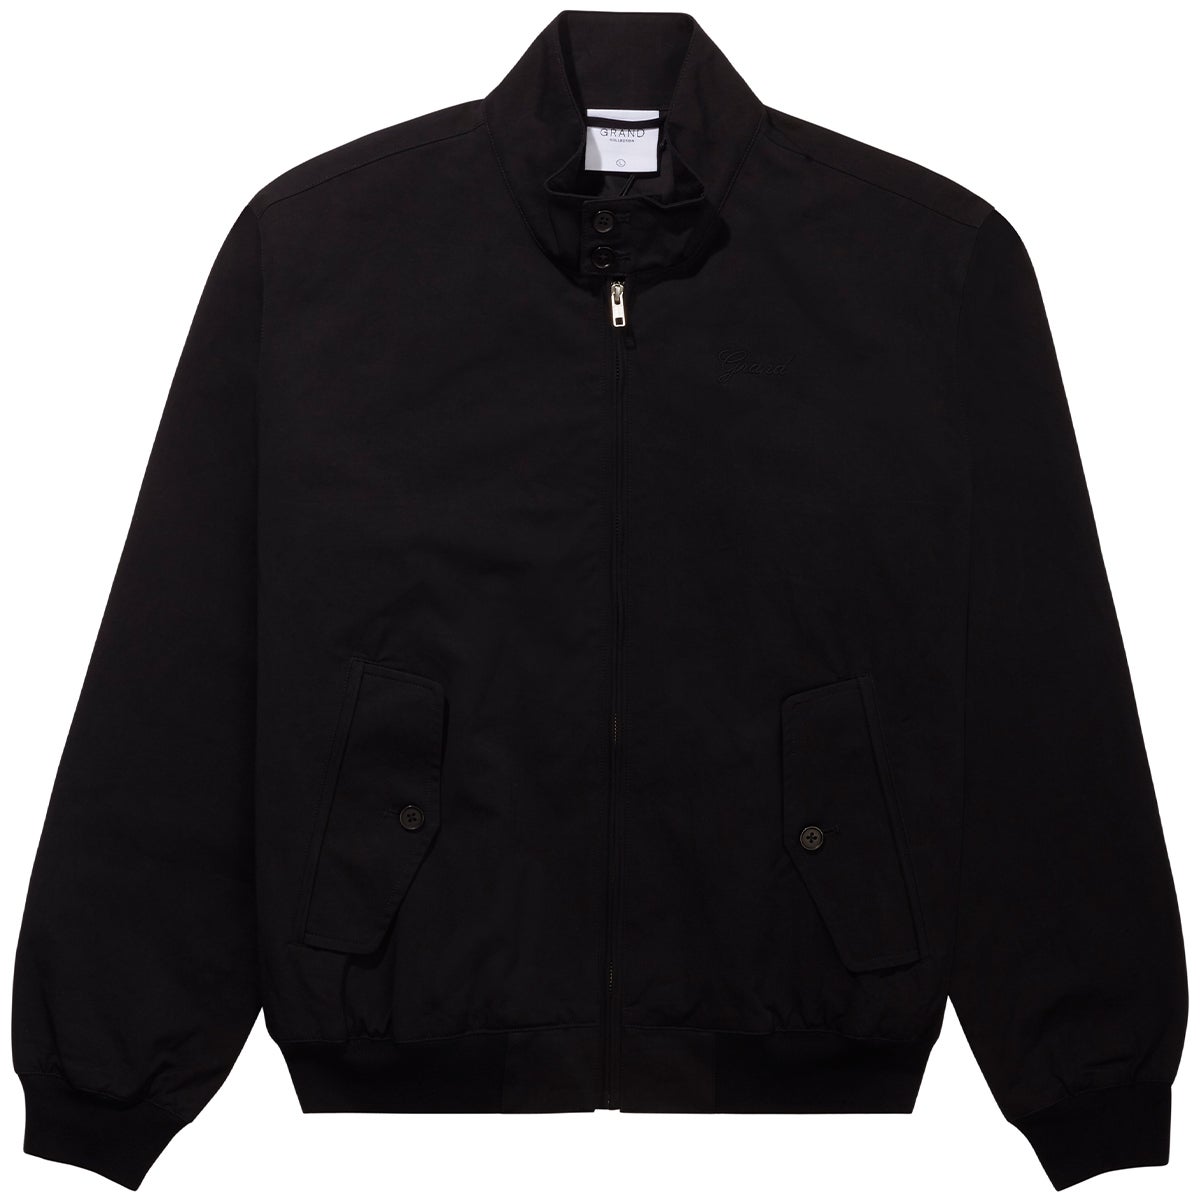 Grand Harrington Jacket in Black | Boardertown